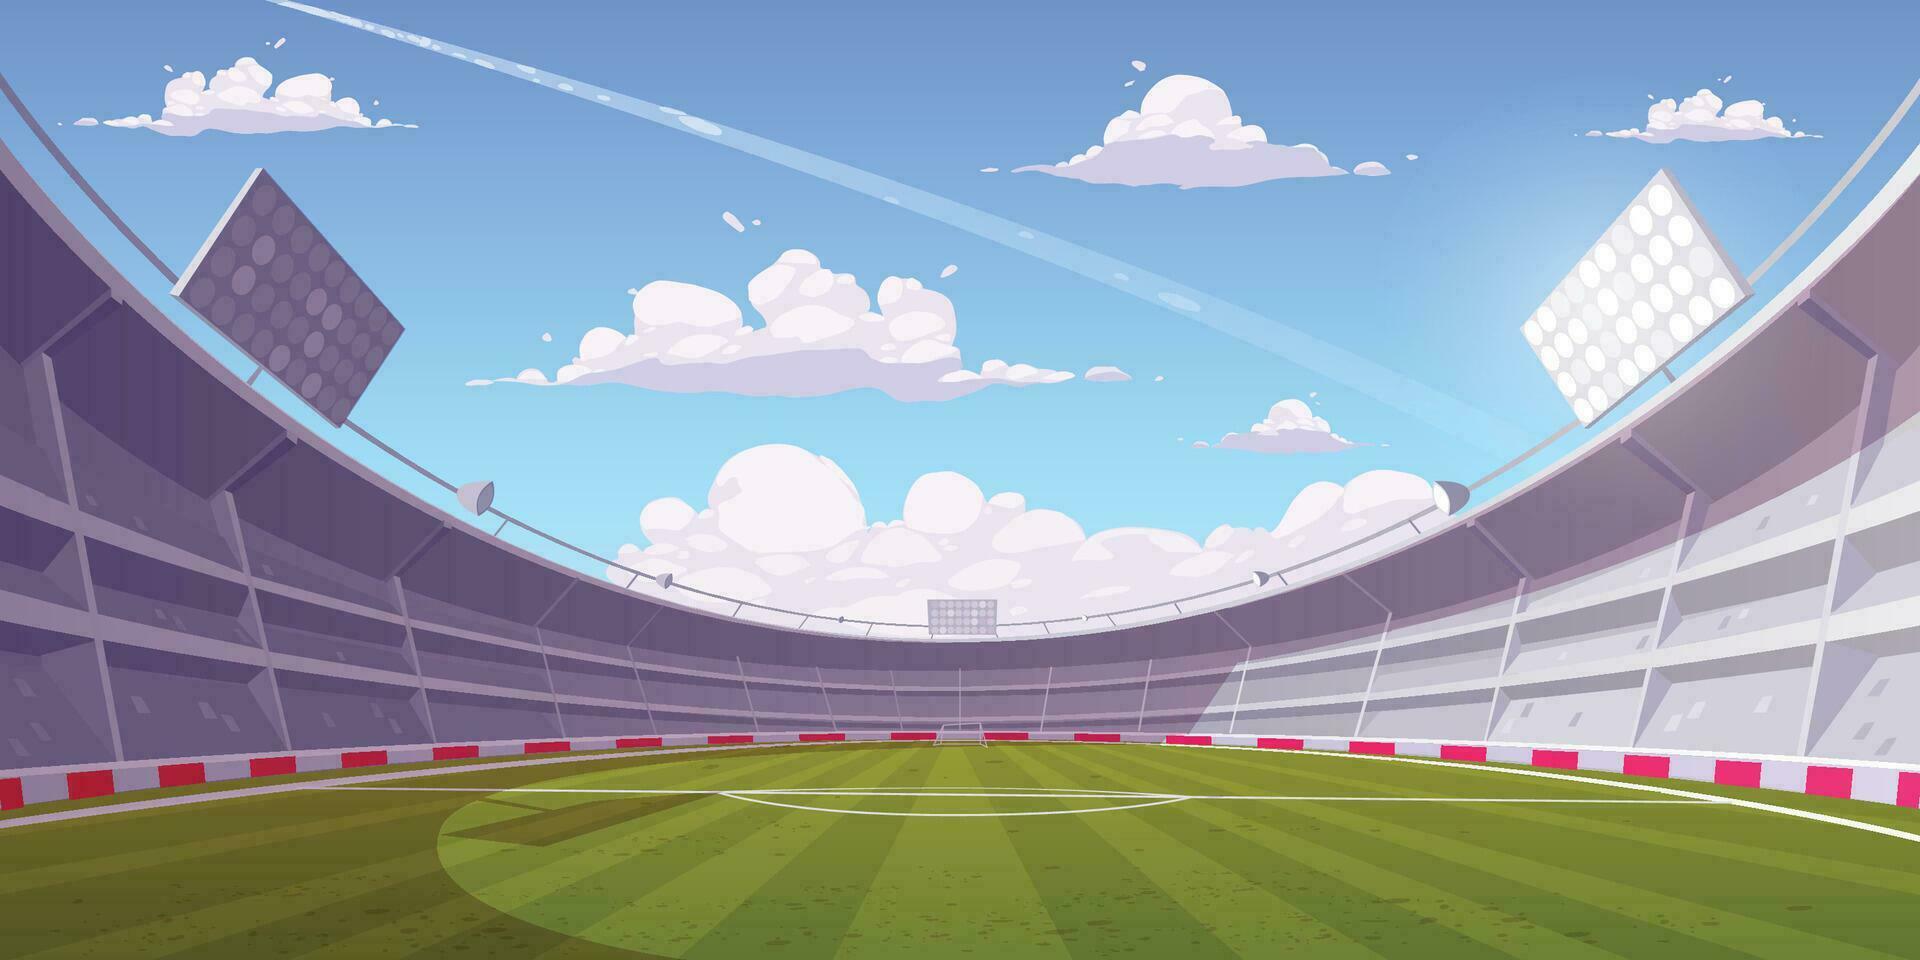 fotboll stadion perspektiv bakgrund med grön gräsmatta, blå himmel vektor illustration